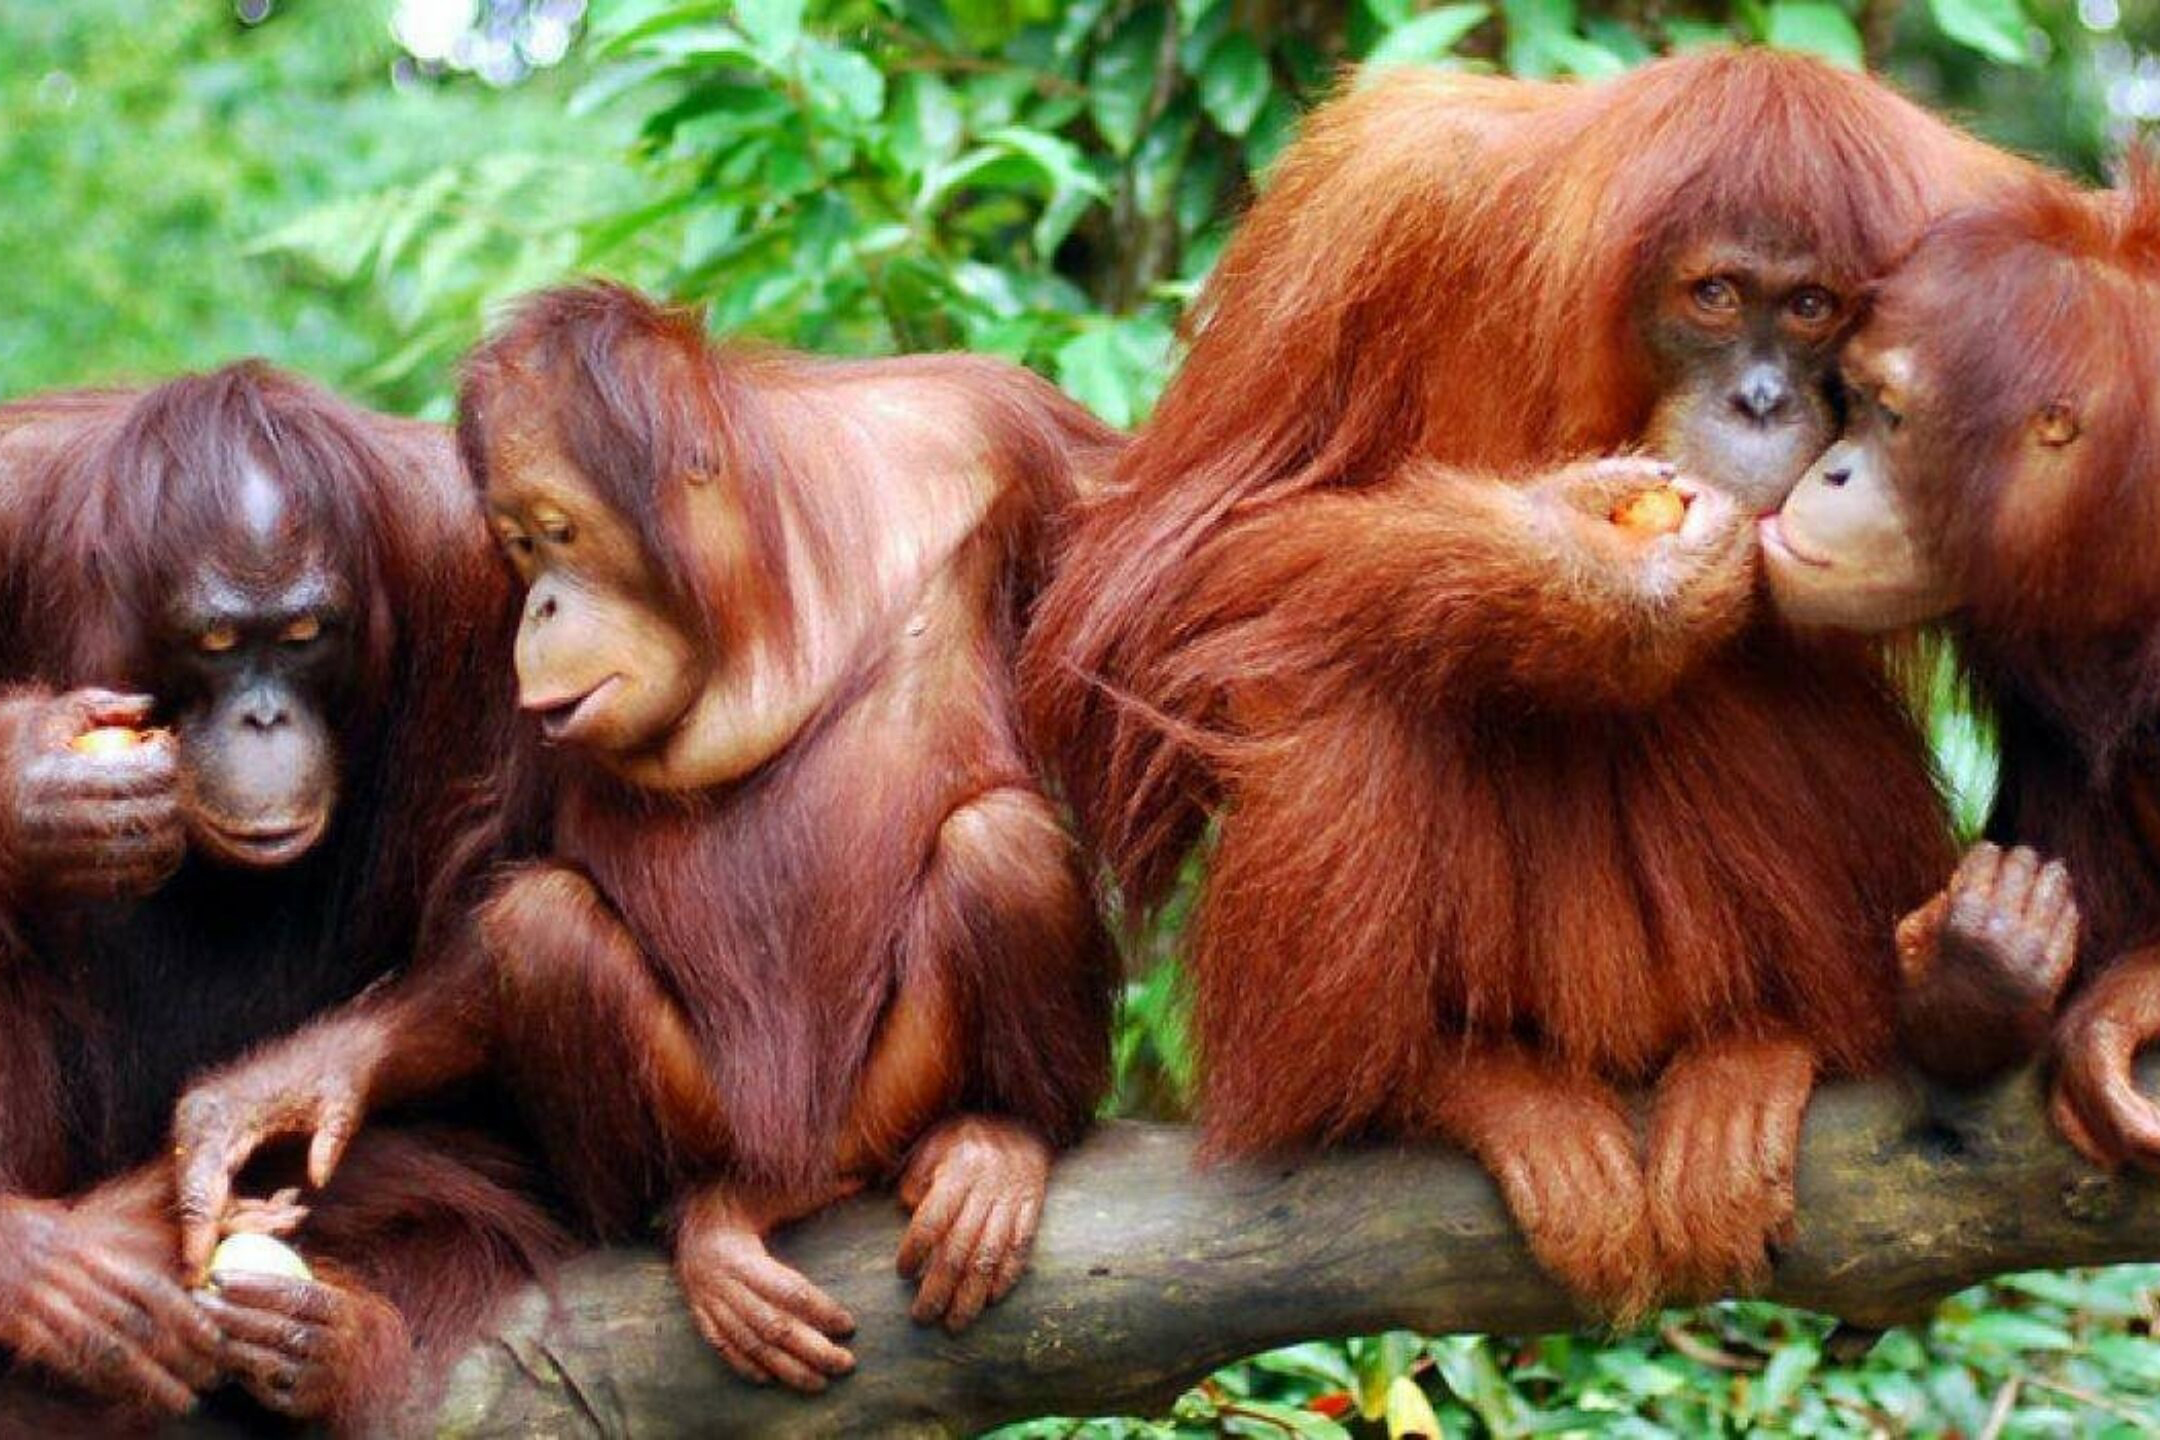 A congress of orangutans.